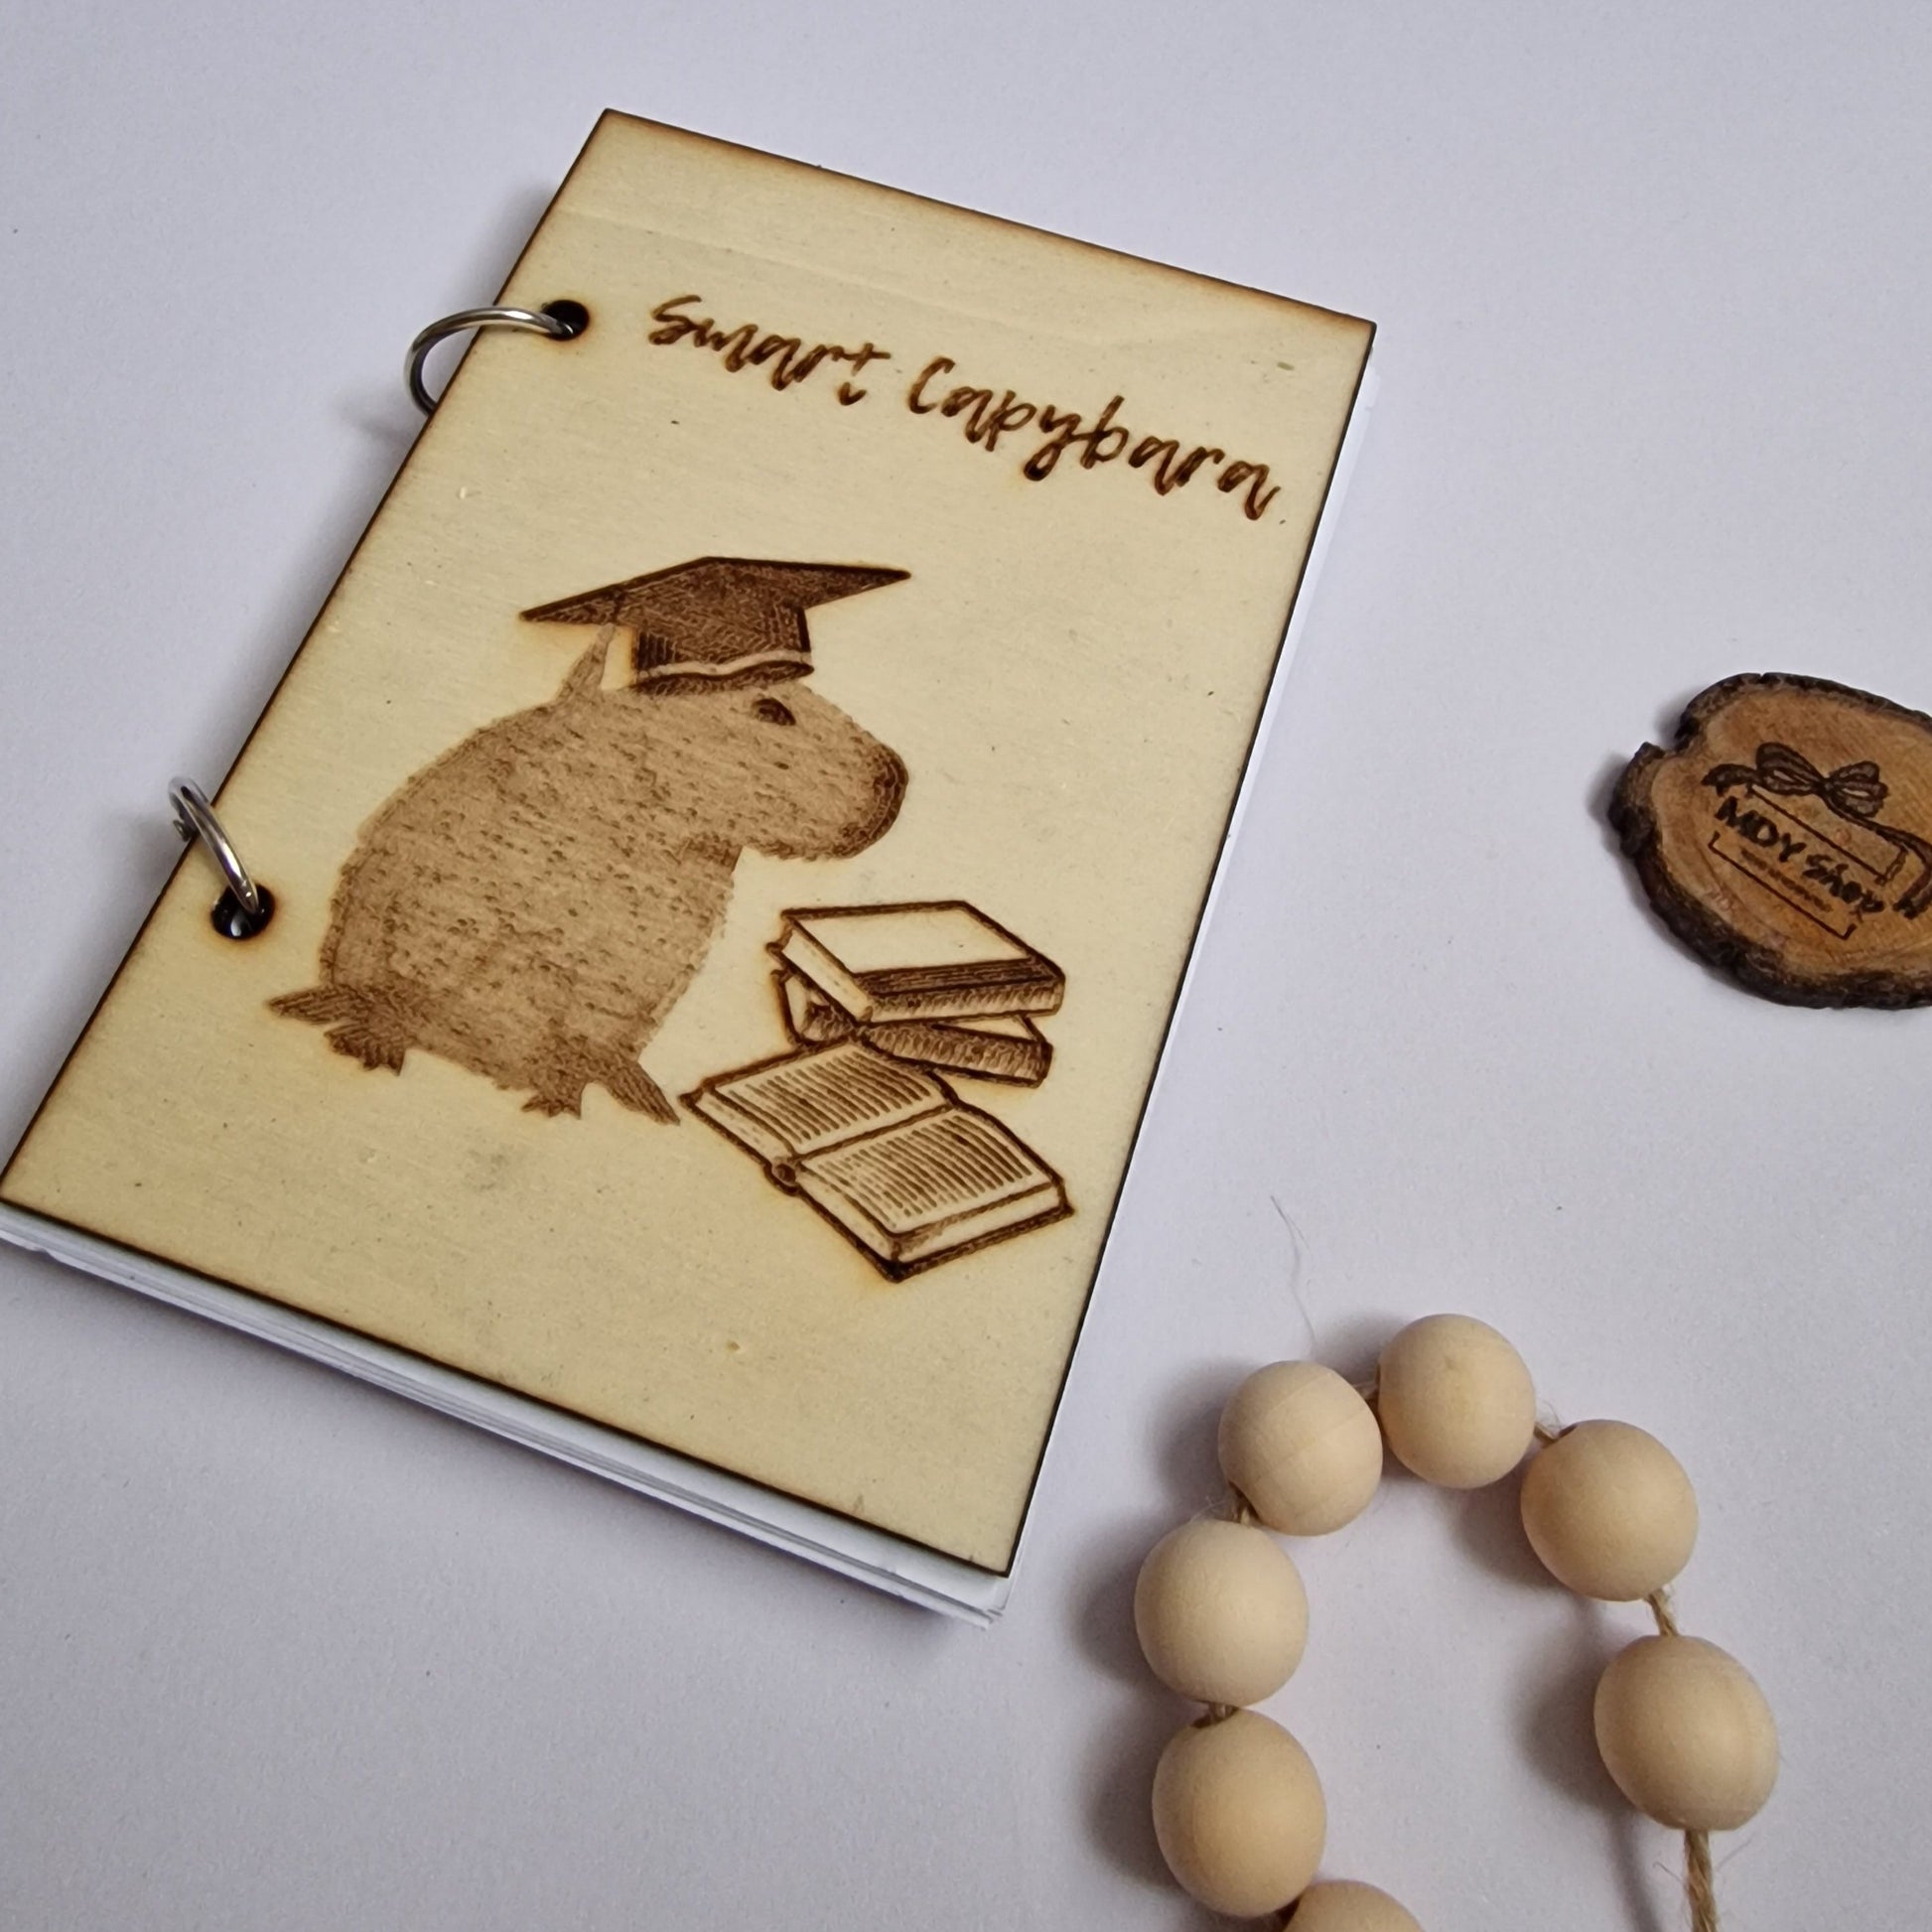 Carnețel cu coperte din lemn gravate și coli albe -A6 - Model Smart Capybara